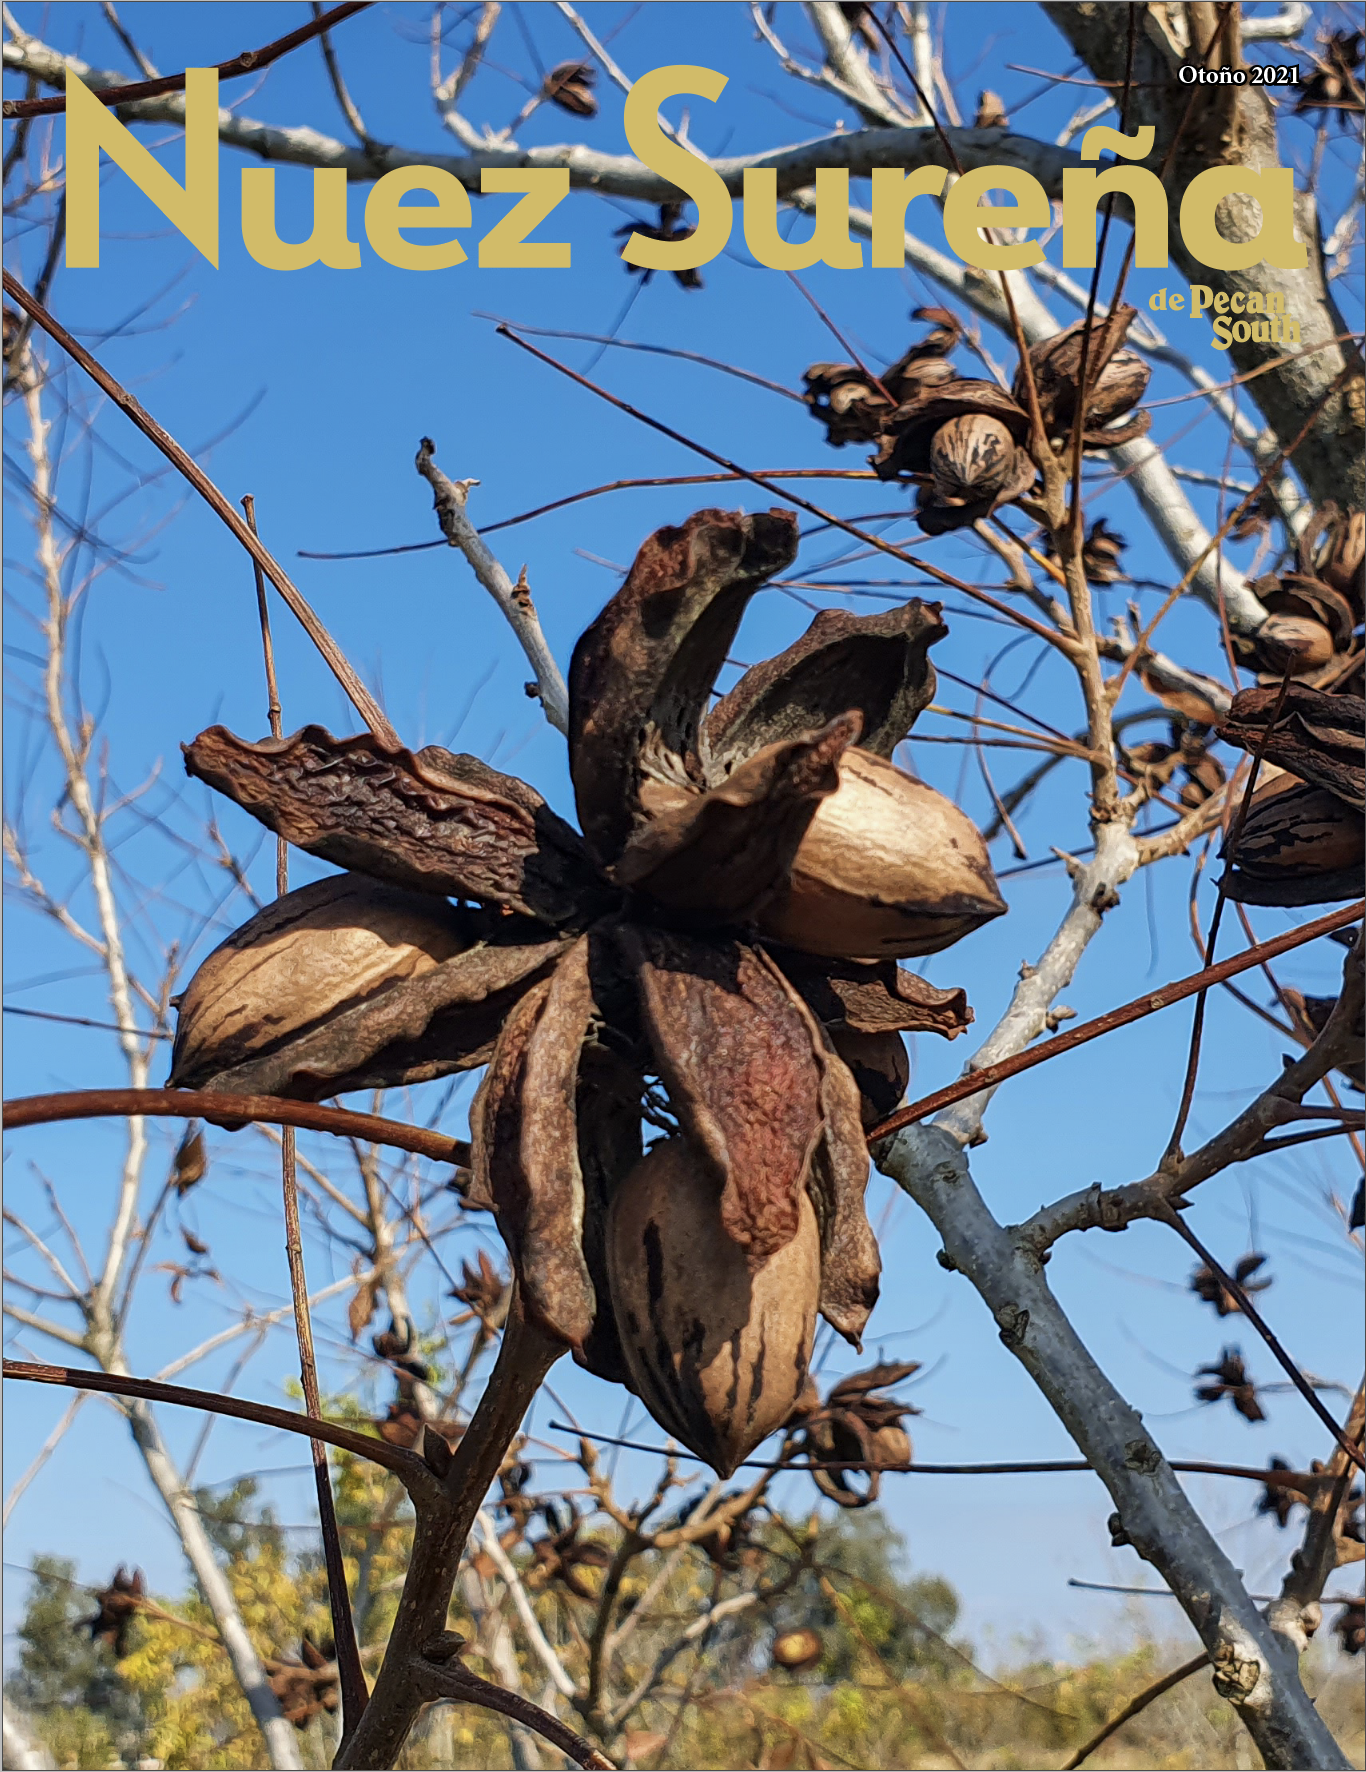 La portada de Nuez Sureña 2021